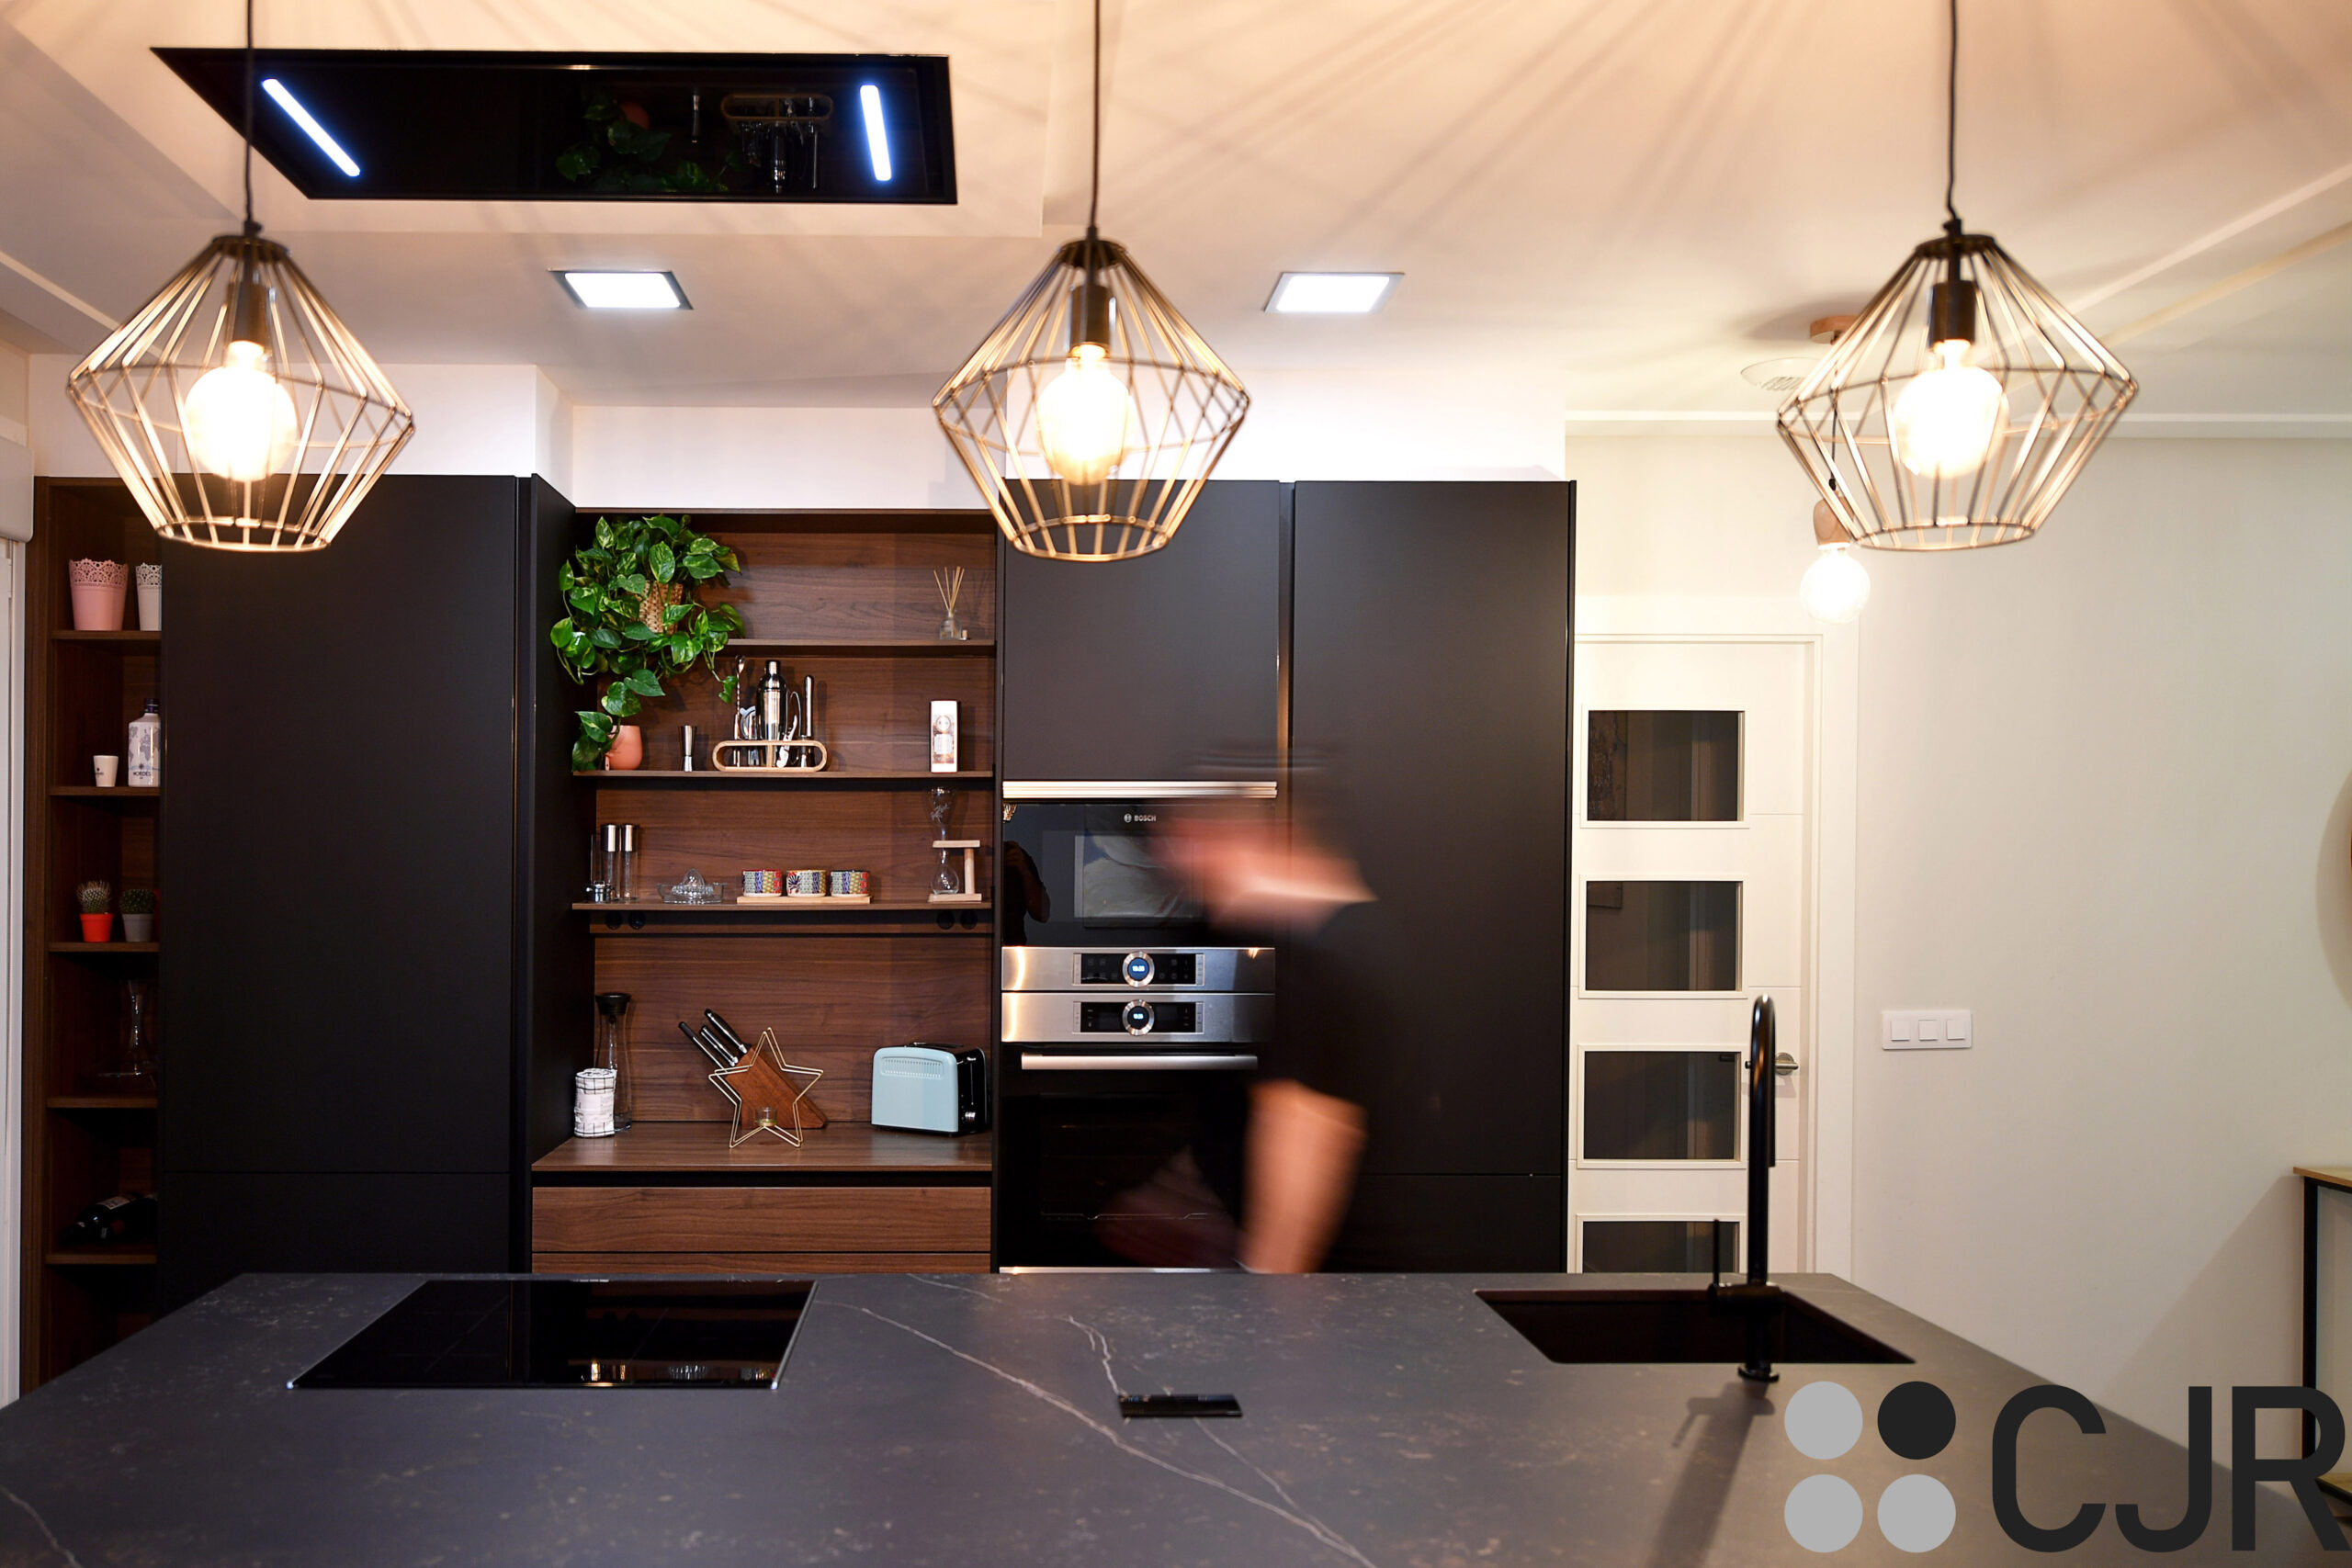 daniel colino en cocina moderna con isla abierta al salon cjr